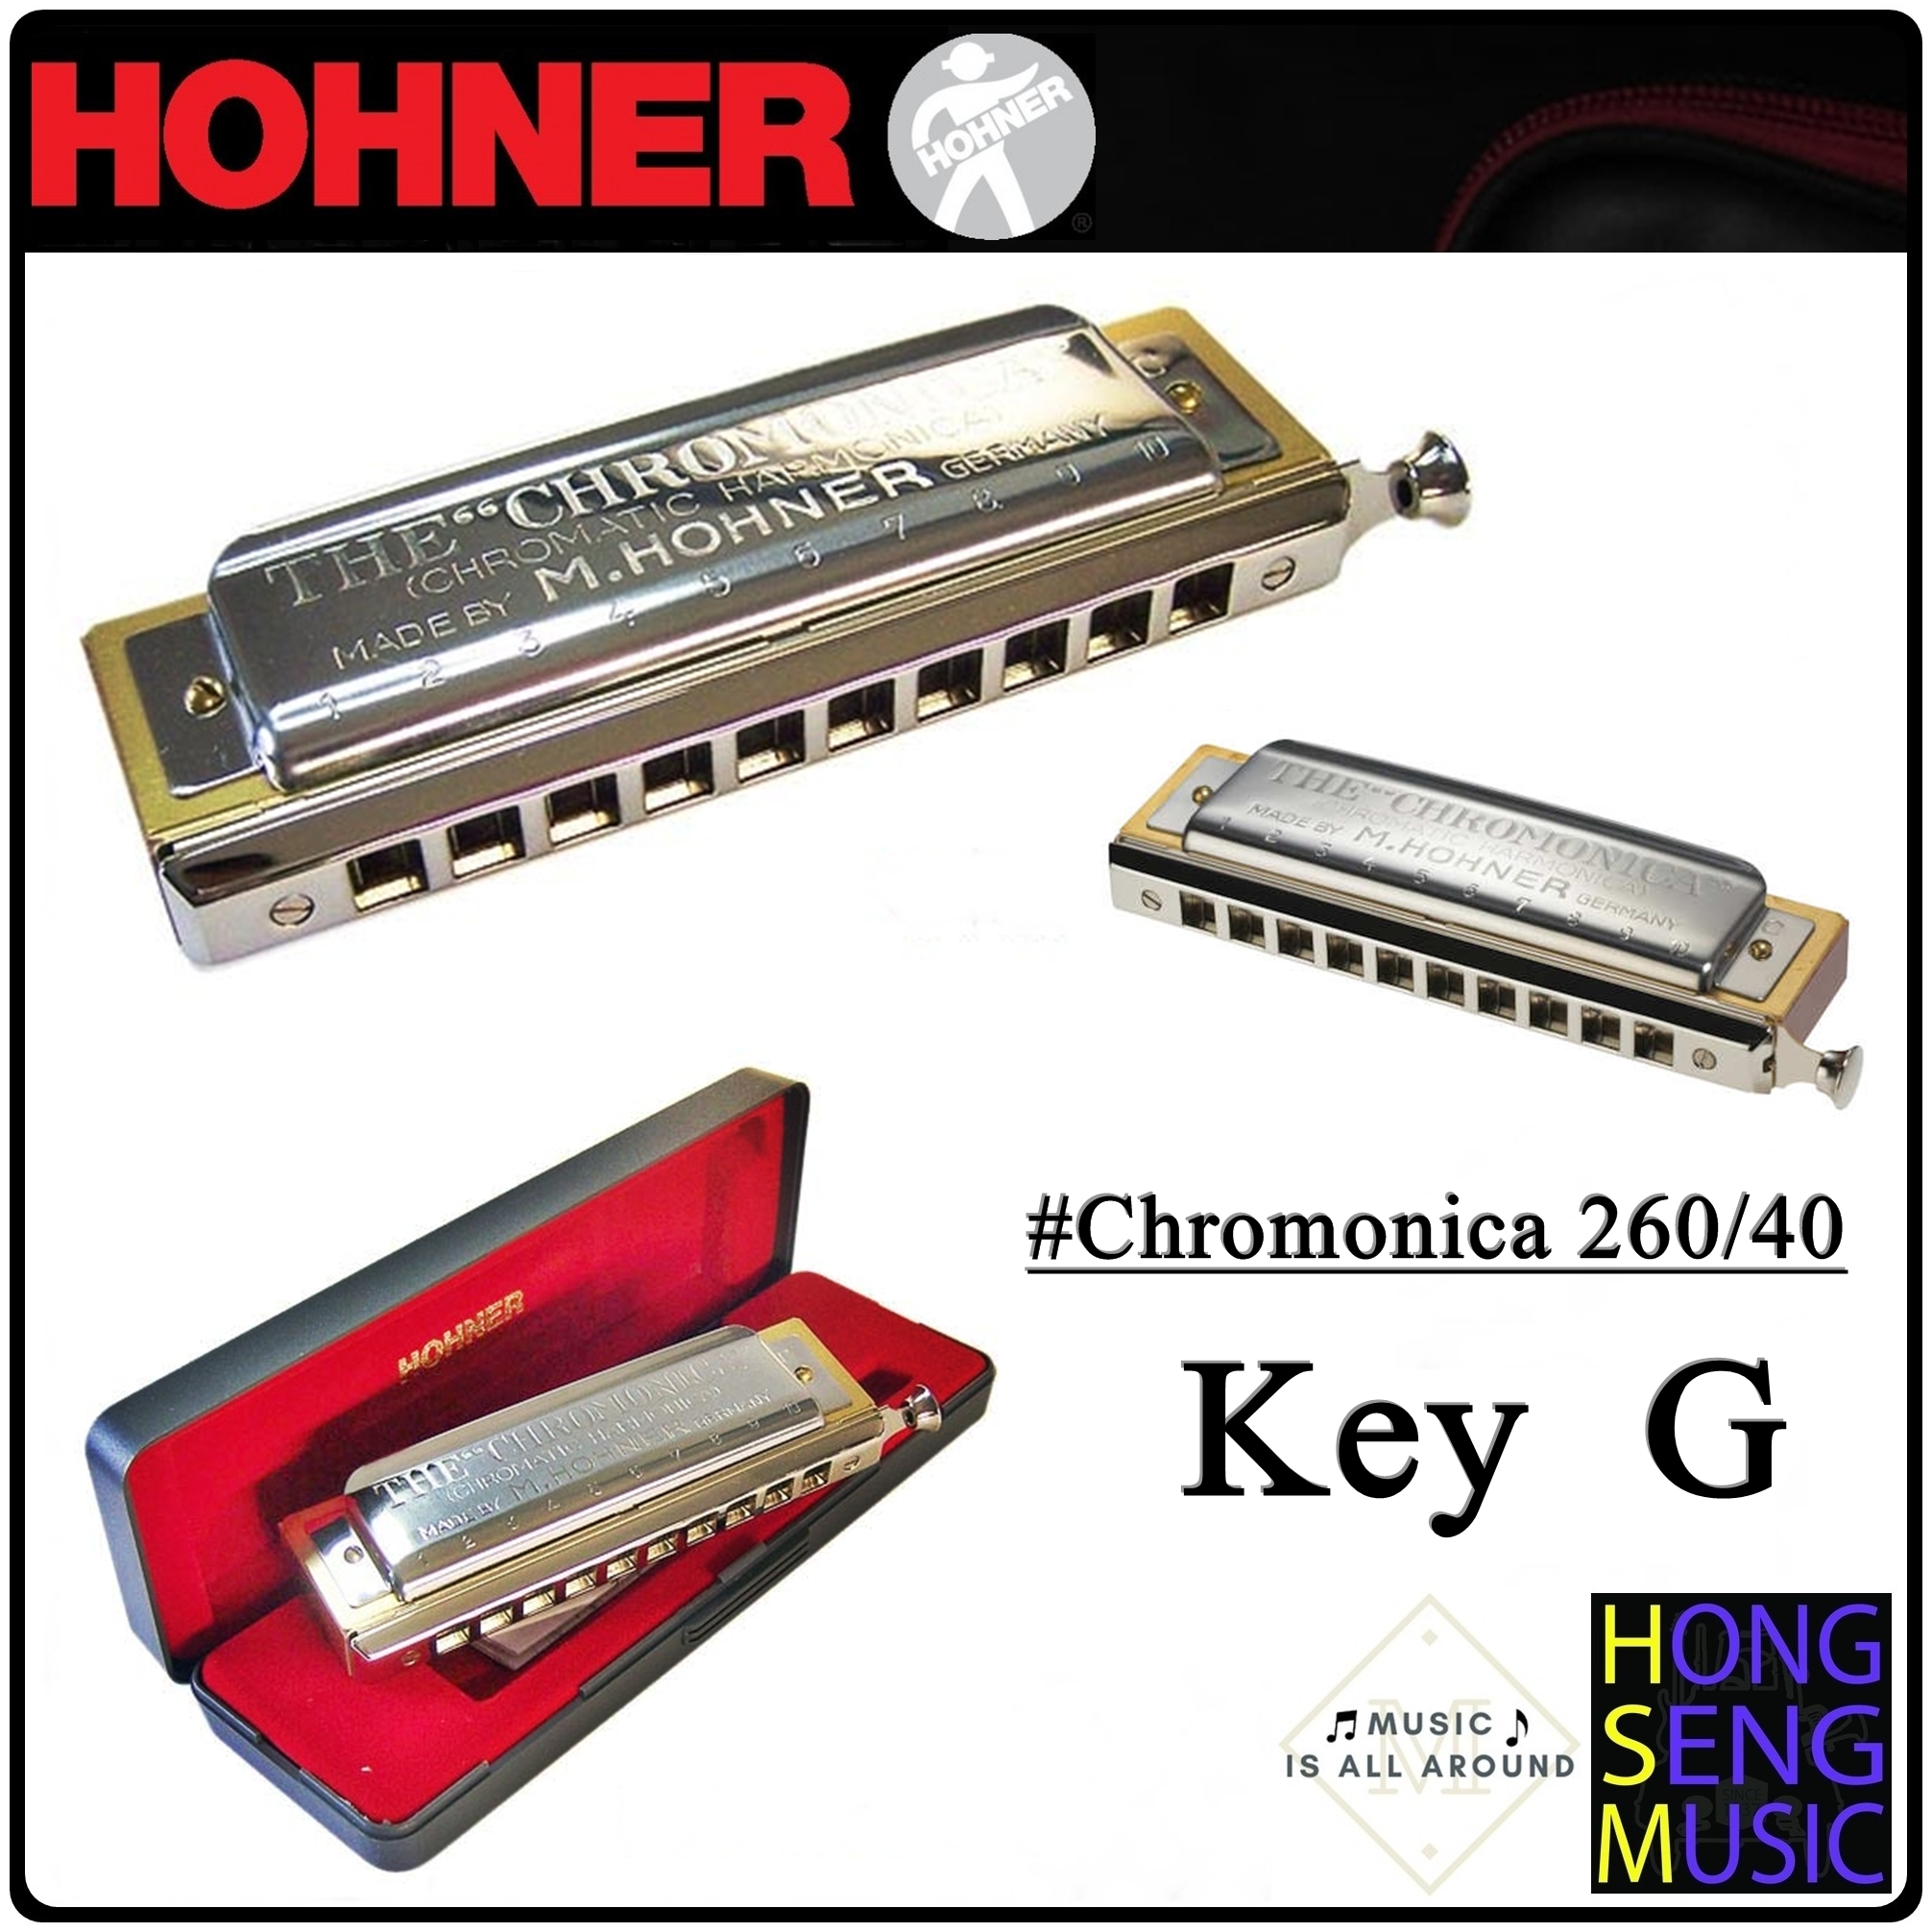 ฮาร์โมนิก้า (เม้าท์ออร์แกน) Hohner รุ่น Chromonica260 Harmonica 260/40 Key G